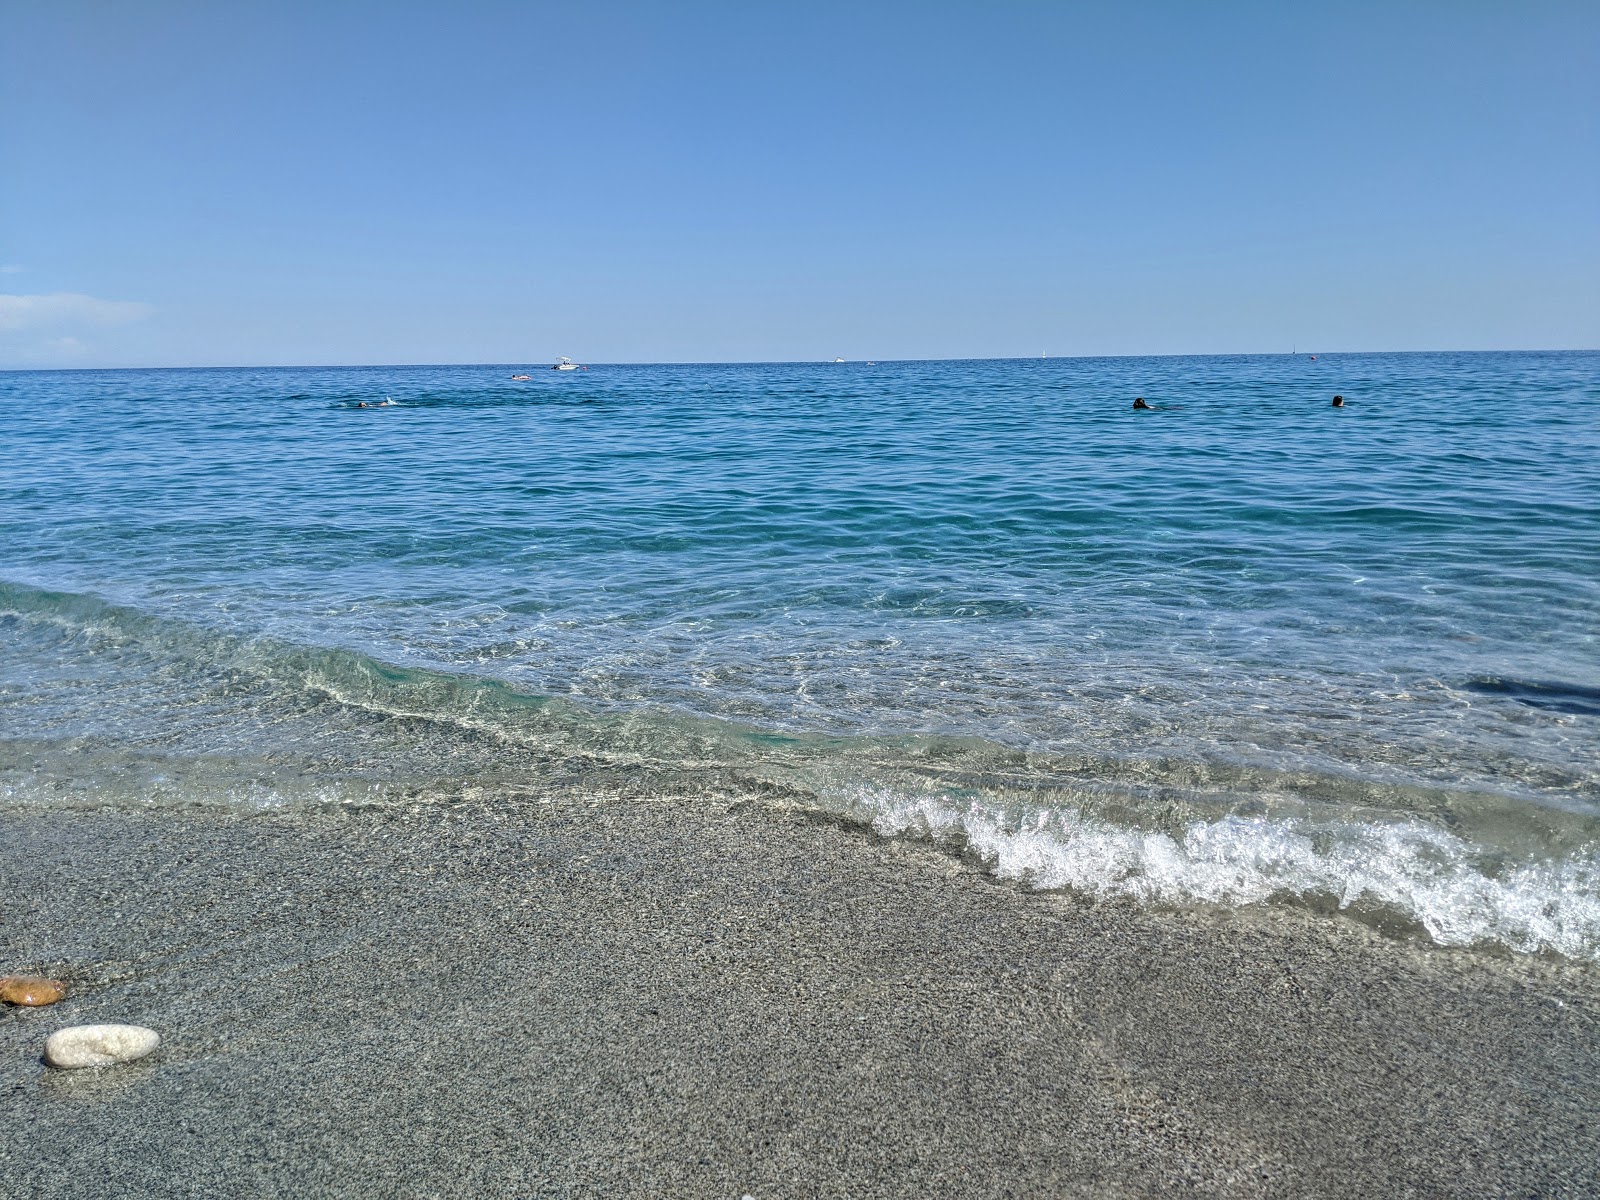 Foto af Spiaggia del Malpasso - populært sted blandt afslapningskendere